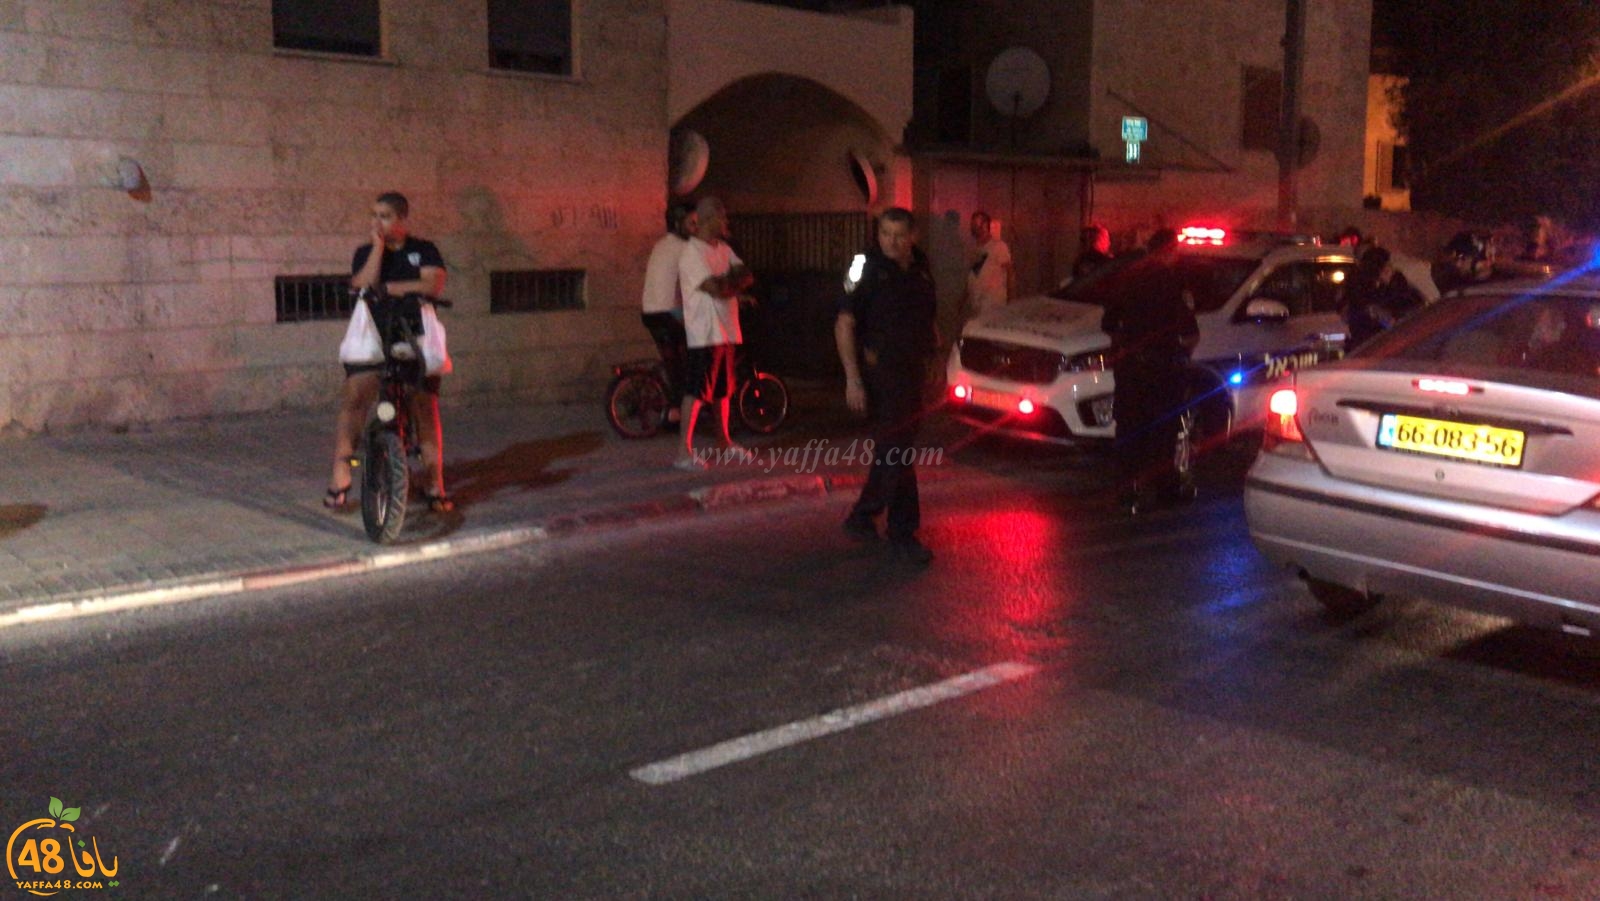  الشرطة تُطارد سائق مركبة في مدينة يافا وتعزز من تواجدها في المنطقة